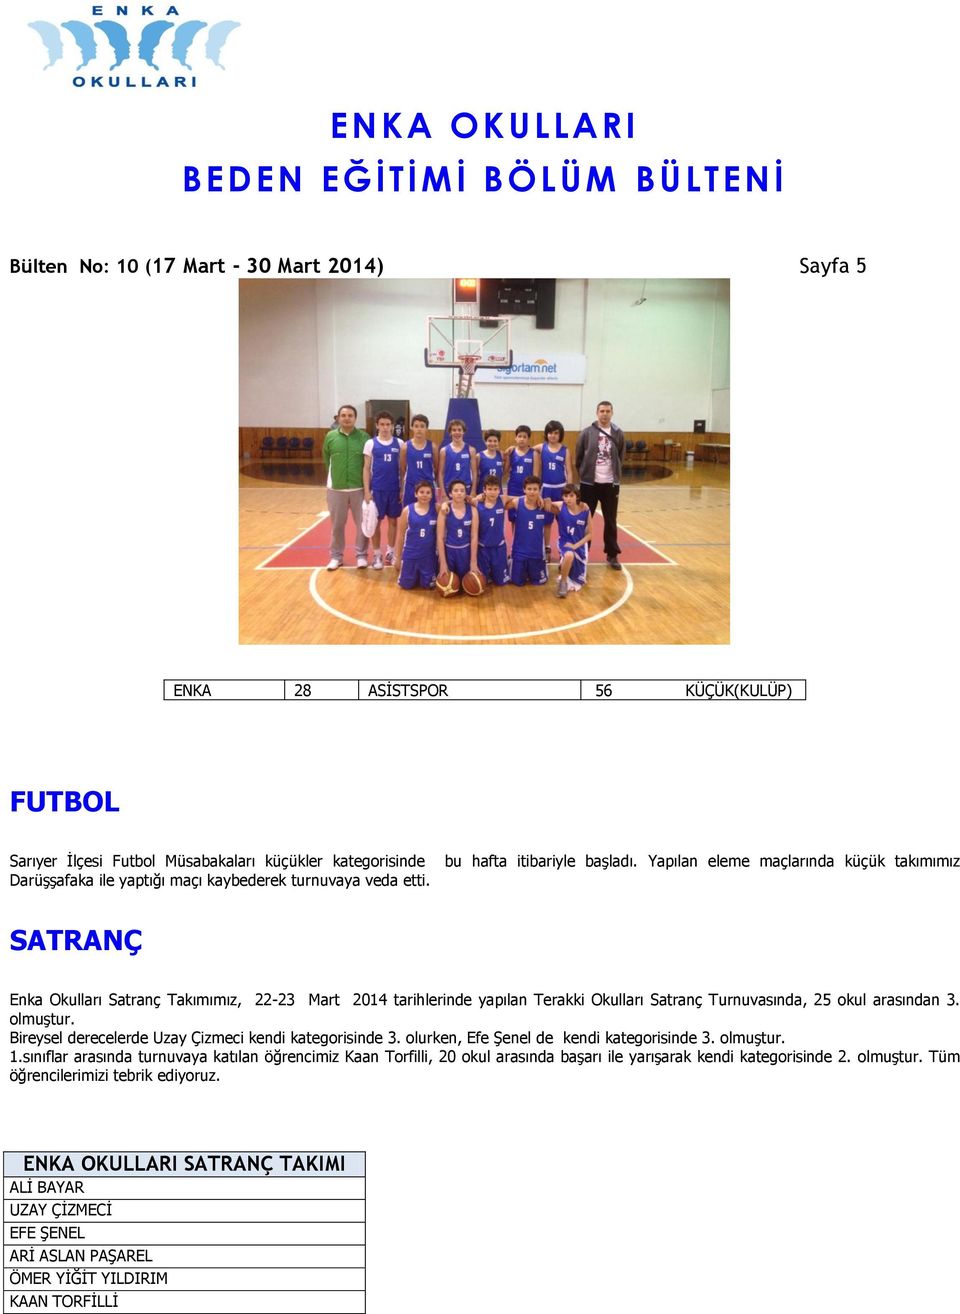 Yapılan eleme maçlarında küçük takımımız SATRANÇ Enka Okulları Satranç Takımımız, 22-23 Mart 2014 tarihlerinde yapılan Terakki Okulları Satranç Turnuvasında, 25 okul arasından 3. olmuştur.